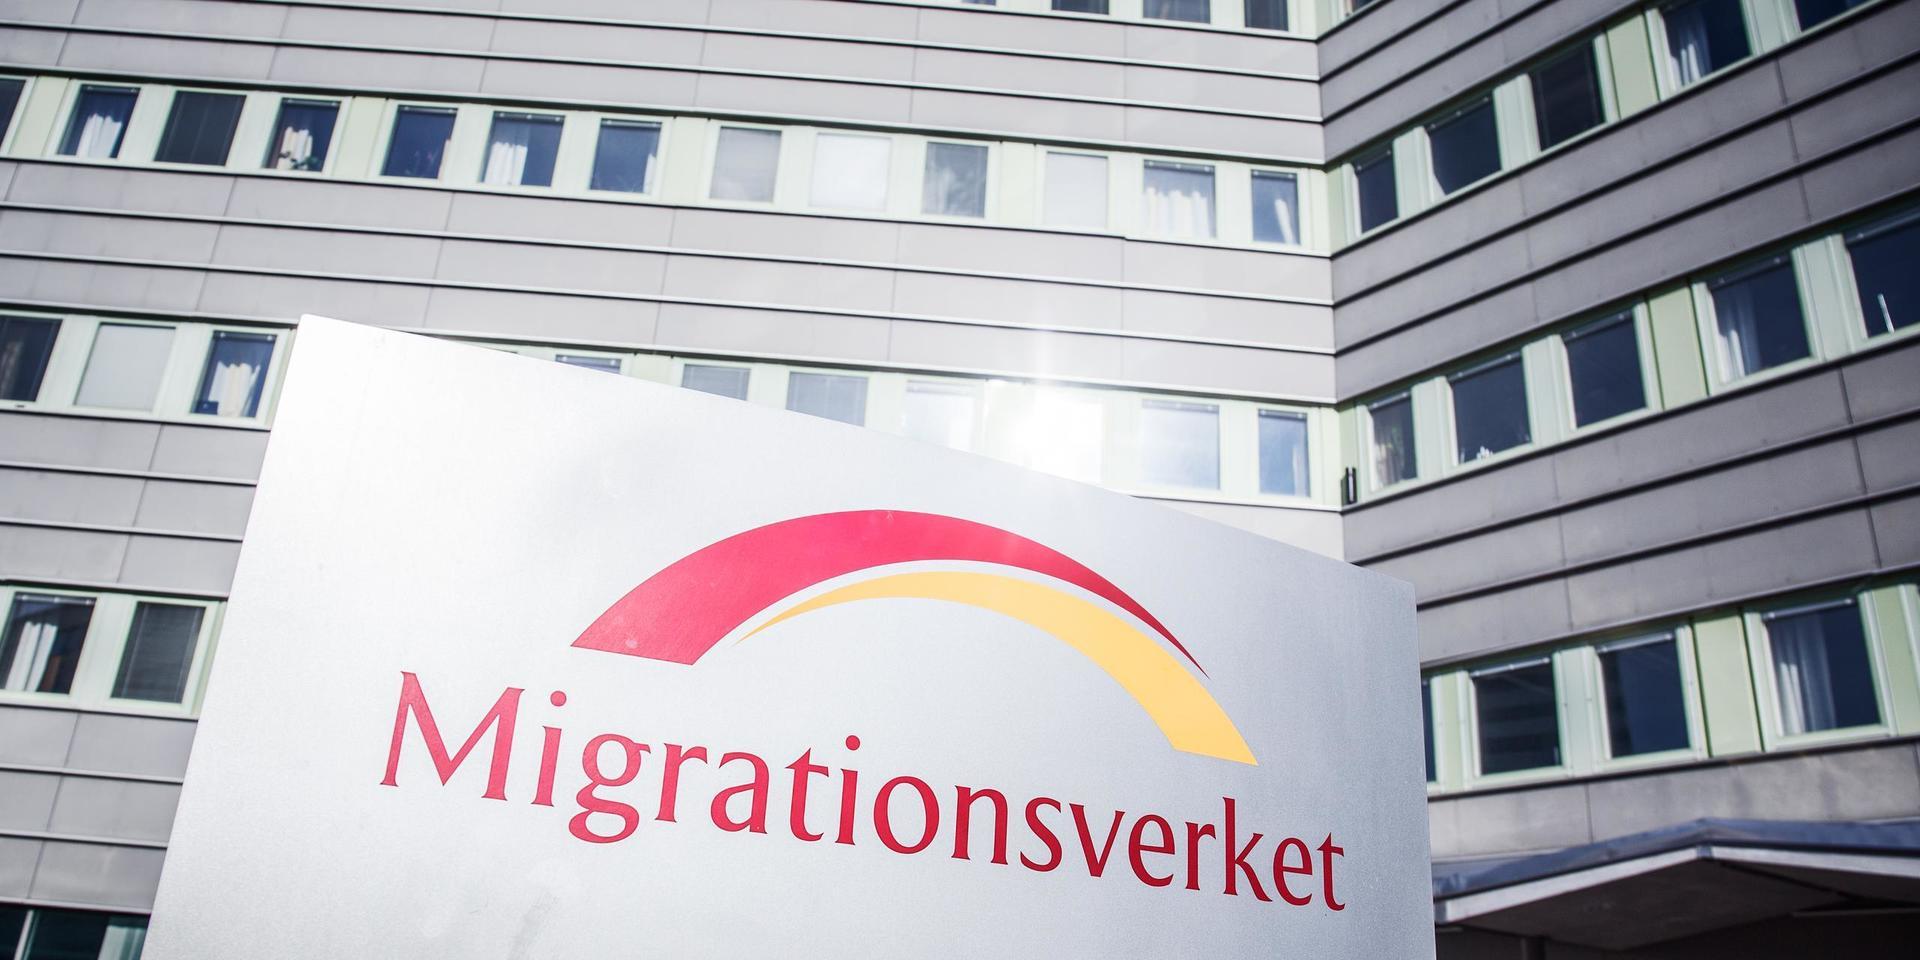 Migrationsverket redovisar att antalet ansökningar minskar under 2020, som en effekt av pandemin.